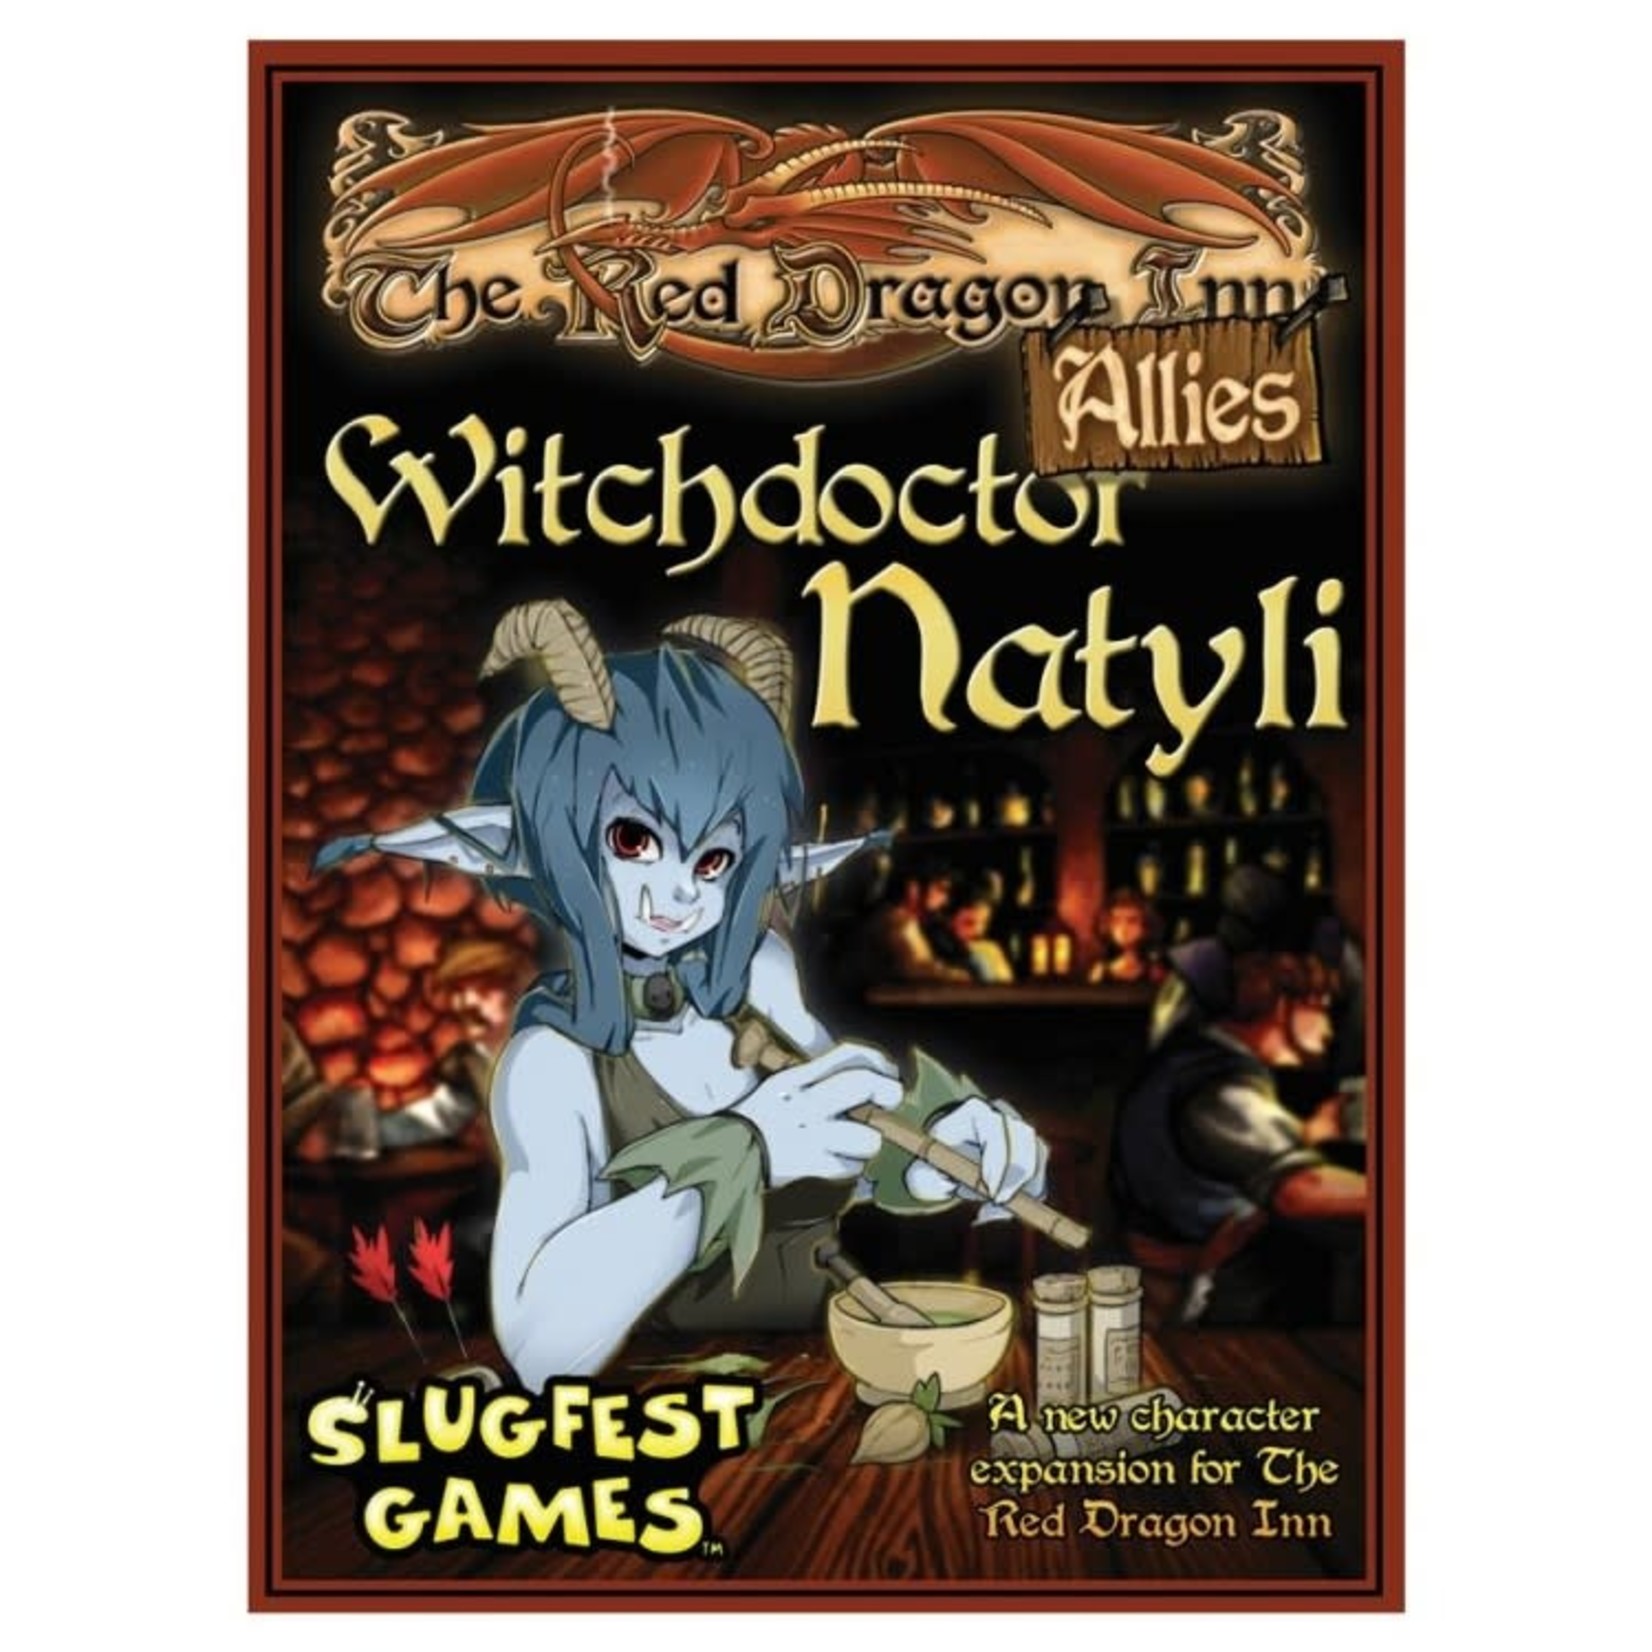 Slugfest Games Red Dragon Inn Allies Witchdoctor Natyli